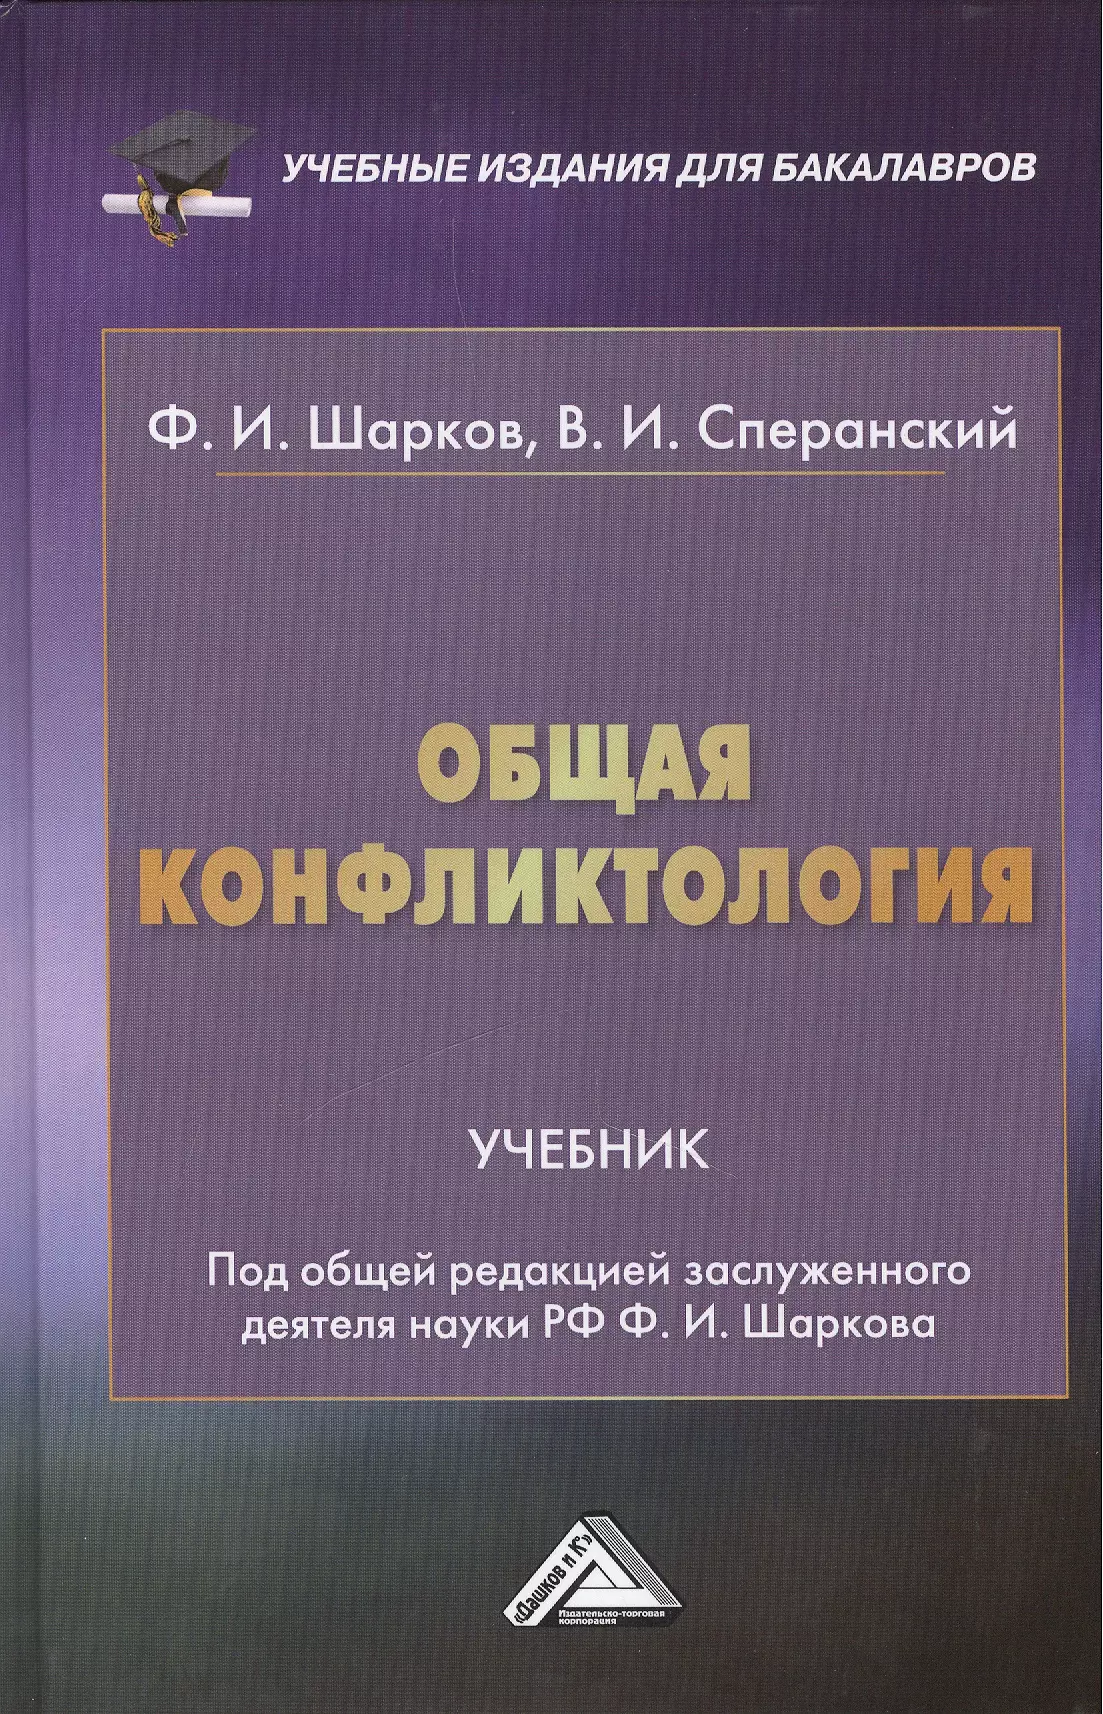 Шарков Феликс Изосимович - Общая конфликтология: Учебник для бакалавров